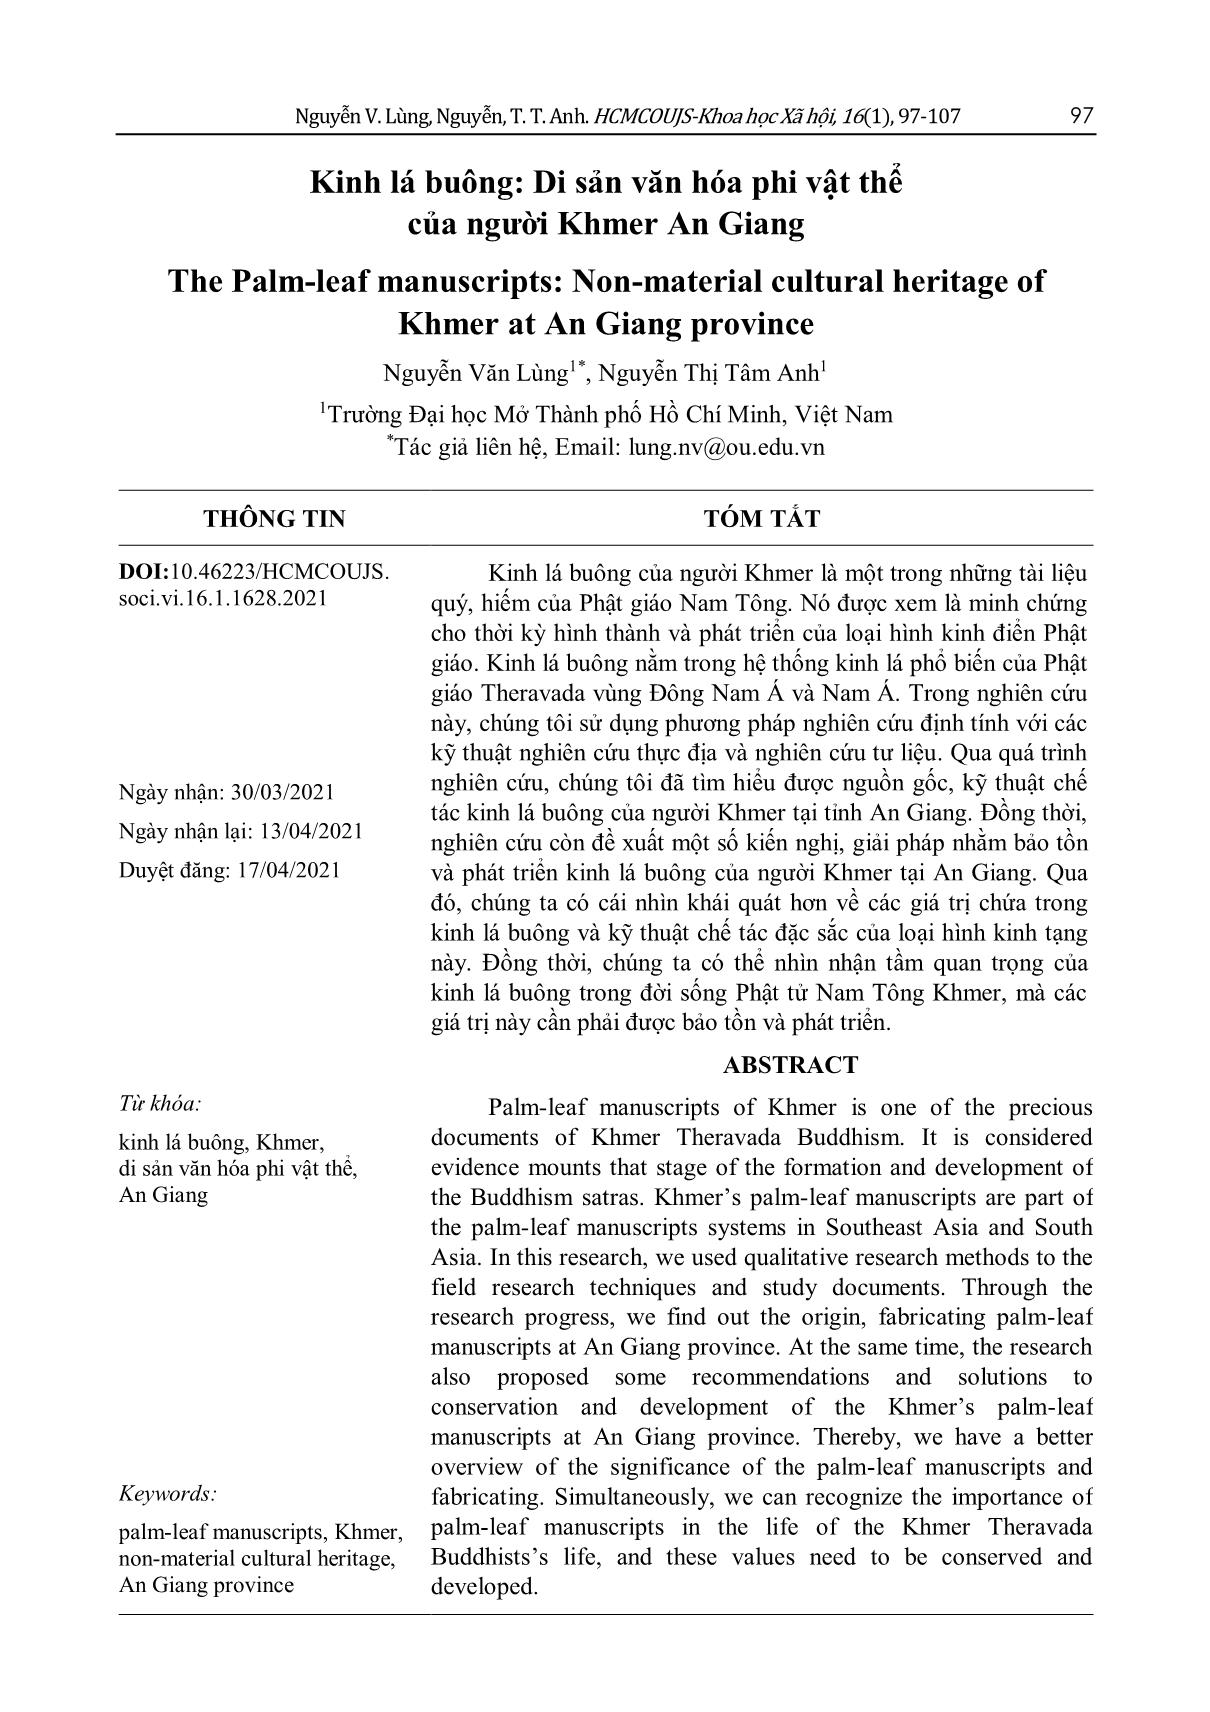 Kinh lá buông: Di sản văn hóa phi vật thể của người Khmer An Giang trang 1